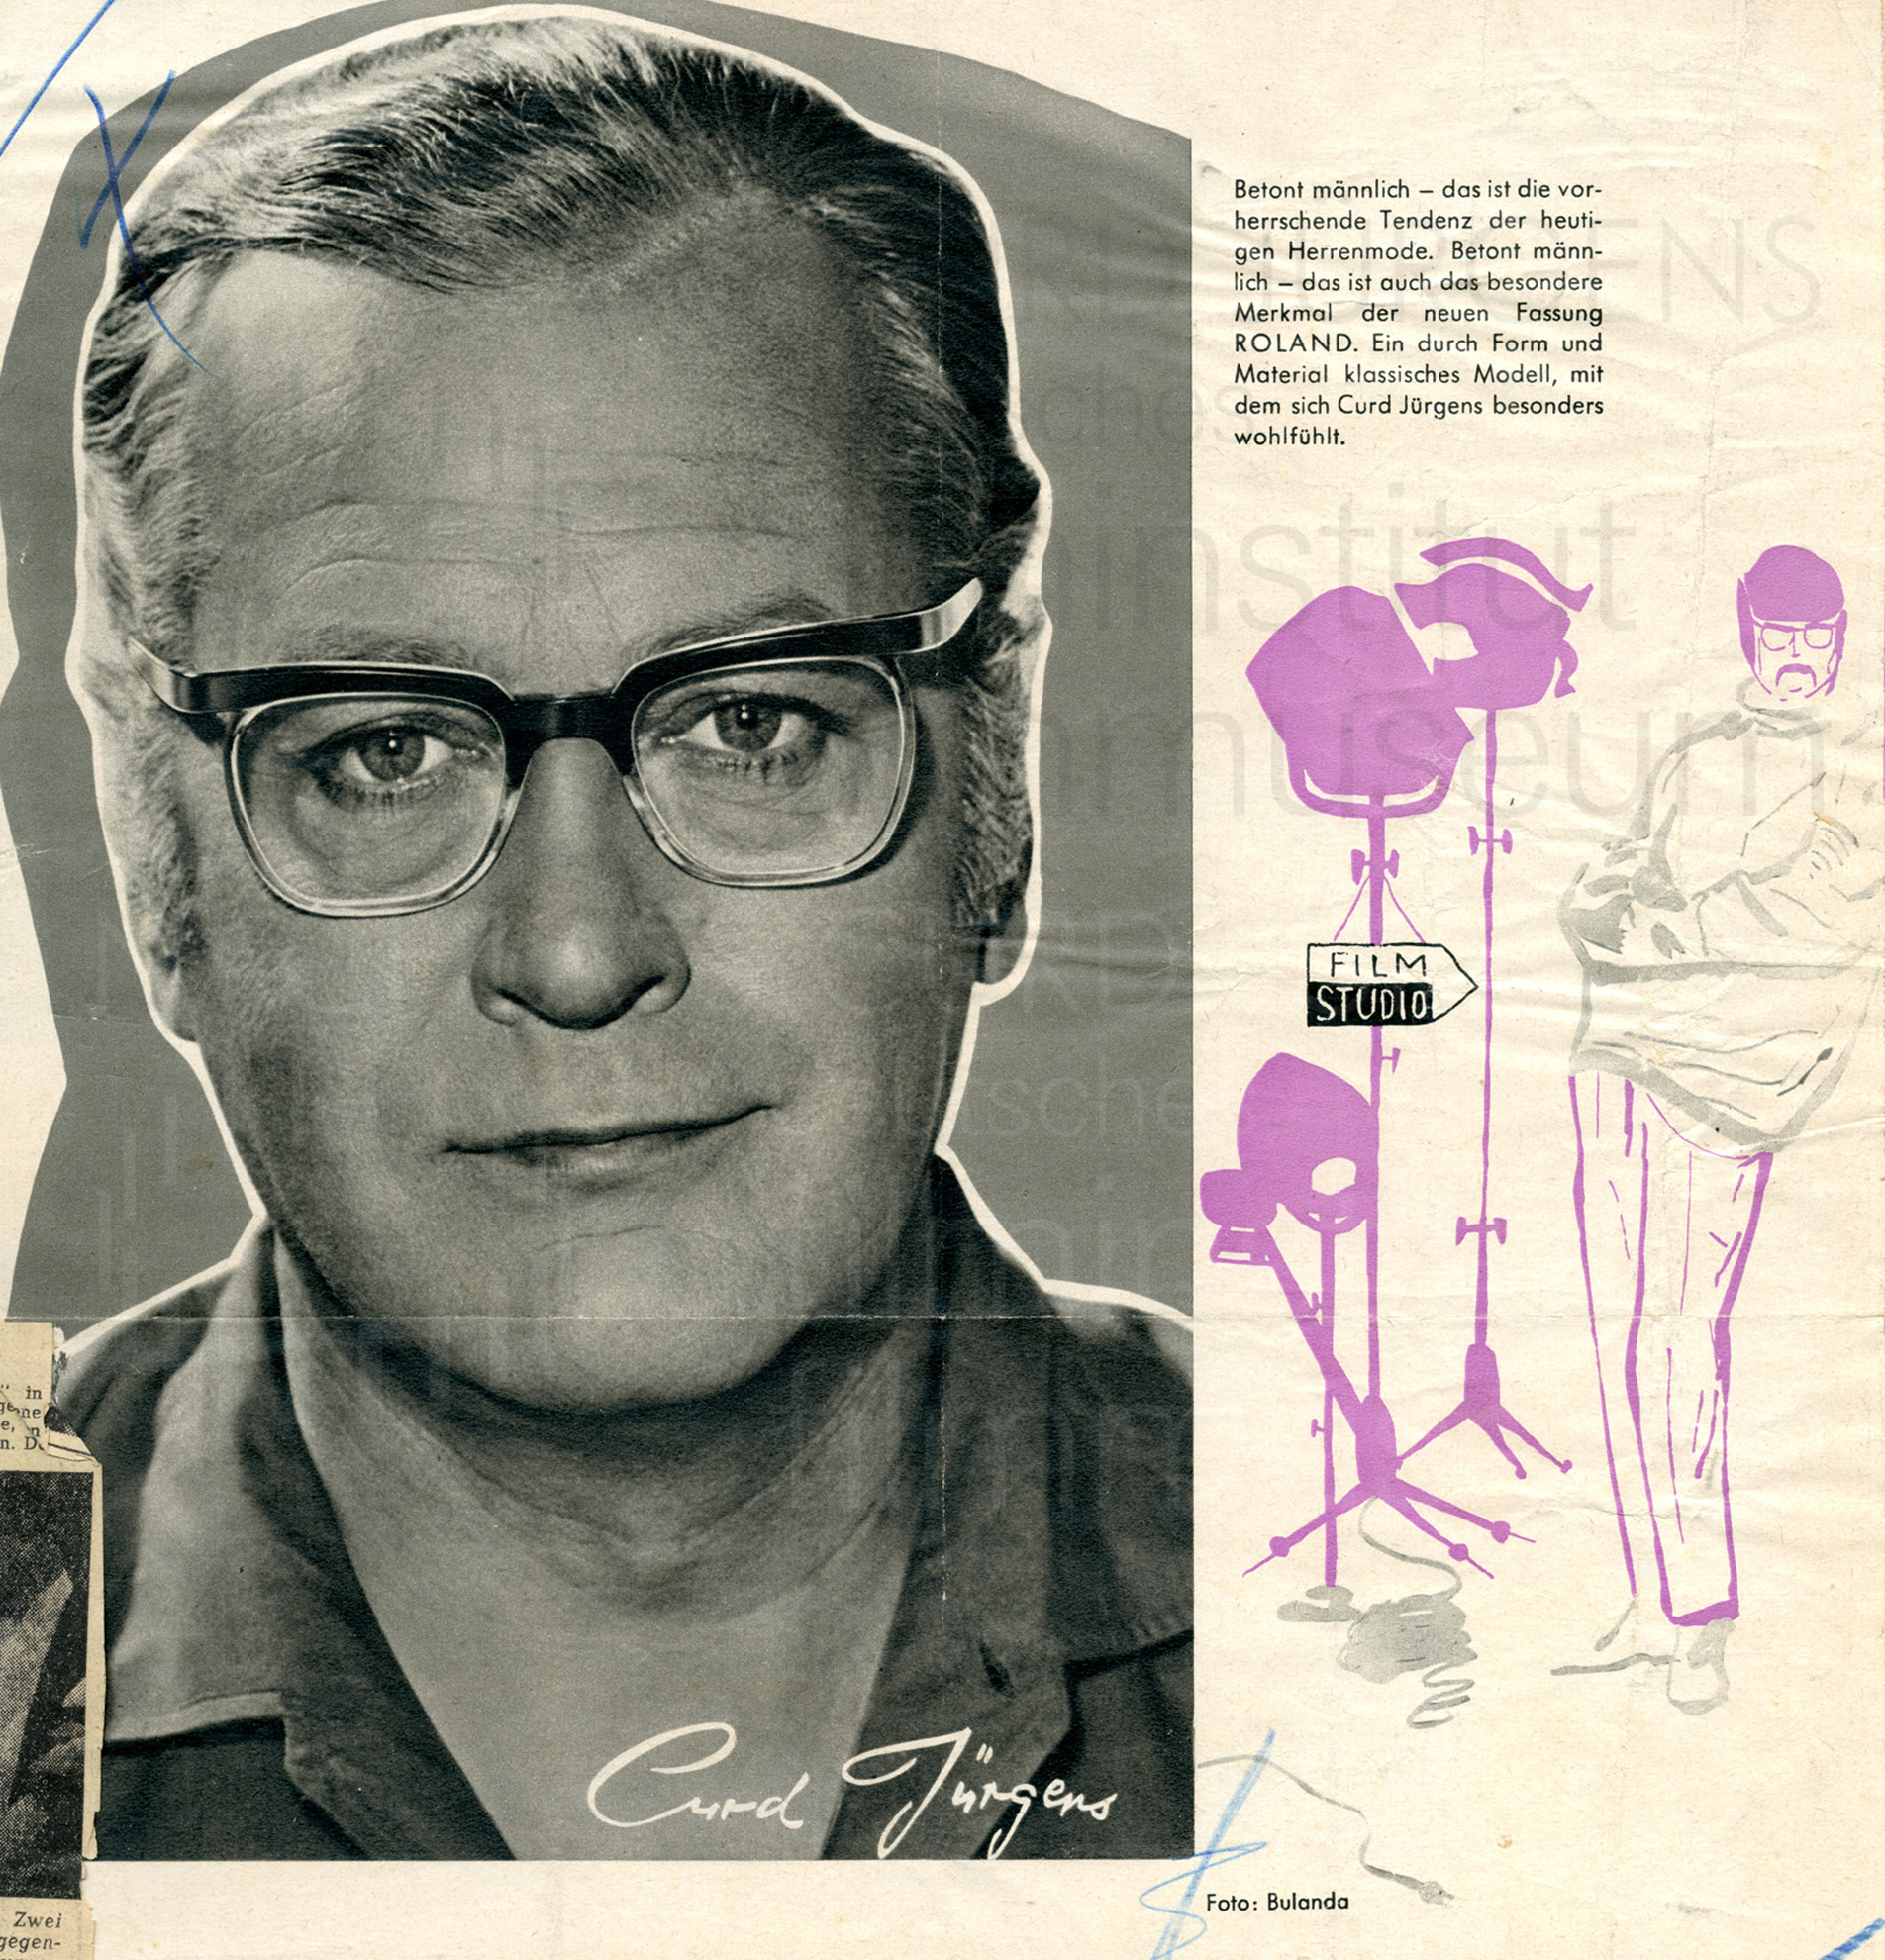 Werbung für die Brillenfassung "ROLAND" von Rodenstock, 1960